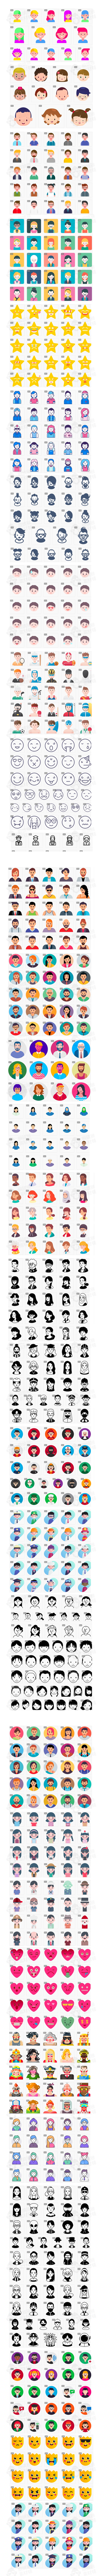 26个系列个性矢量头像图标商务手绘各种职业icon 矢量格式素材-插画-到位啦UI